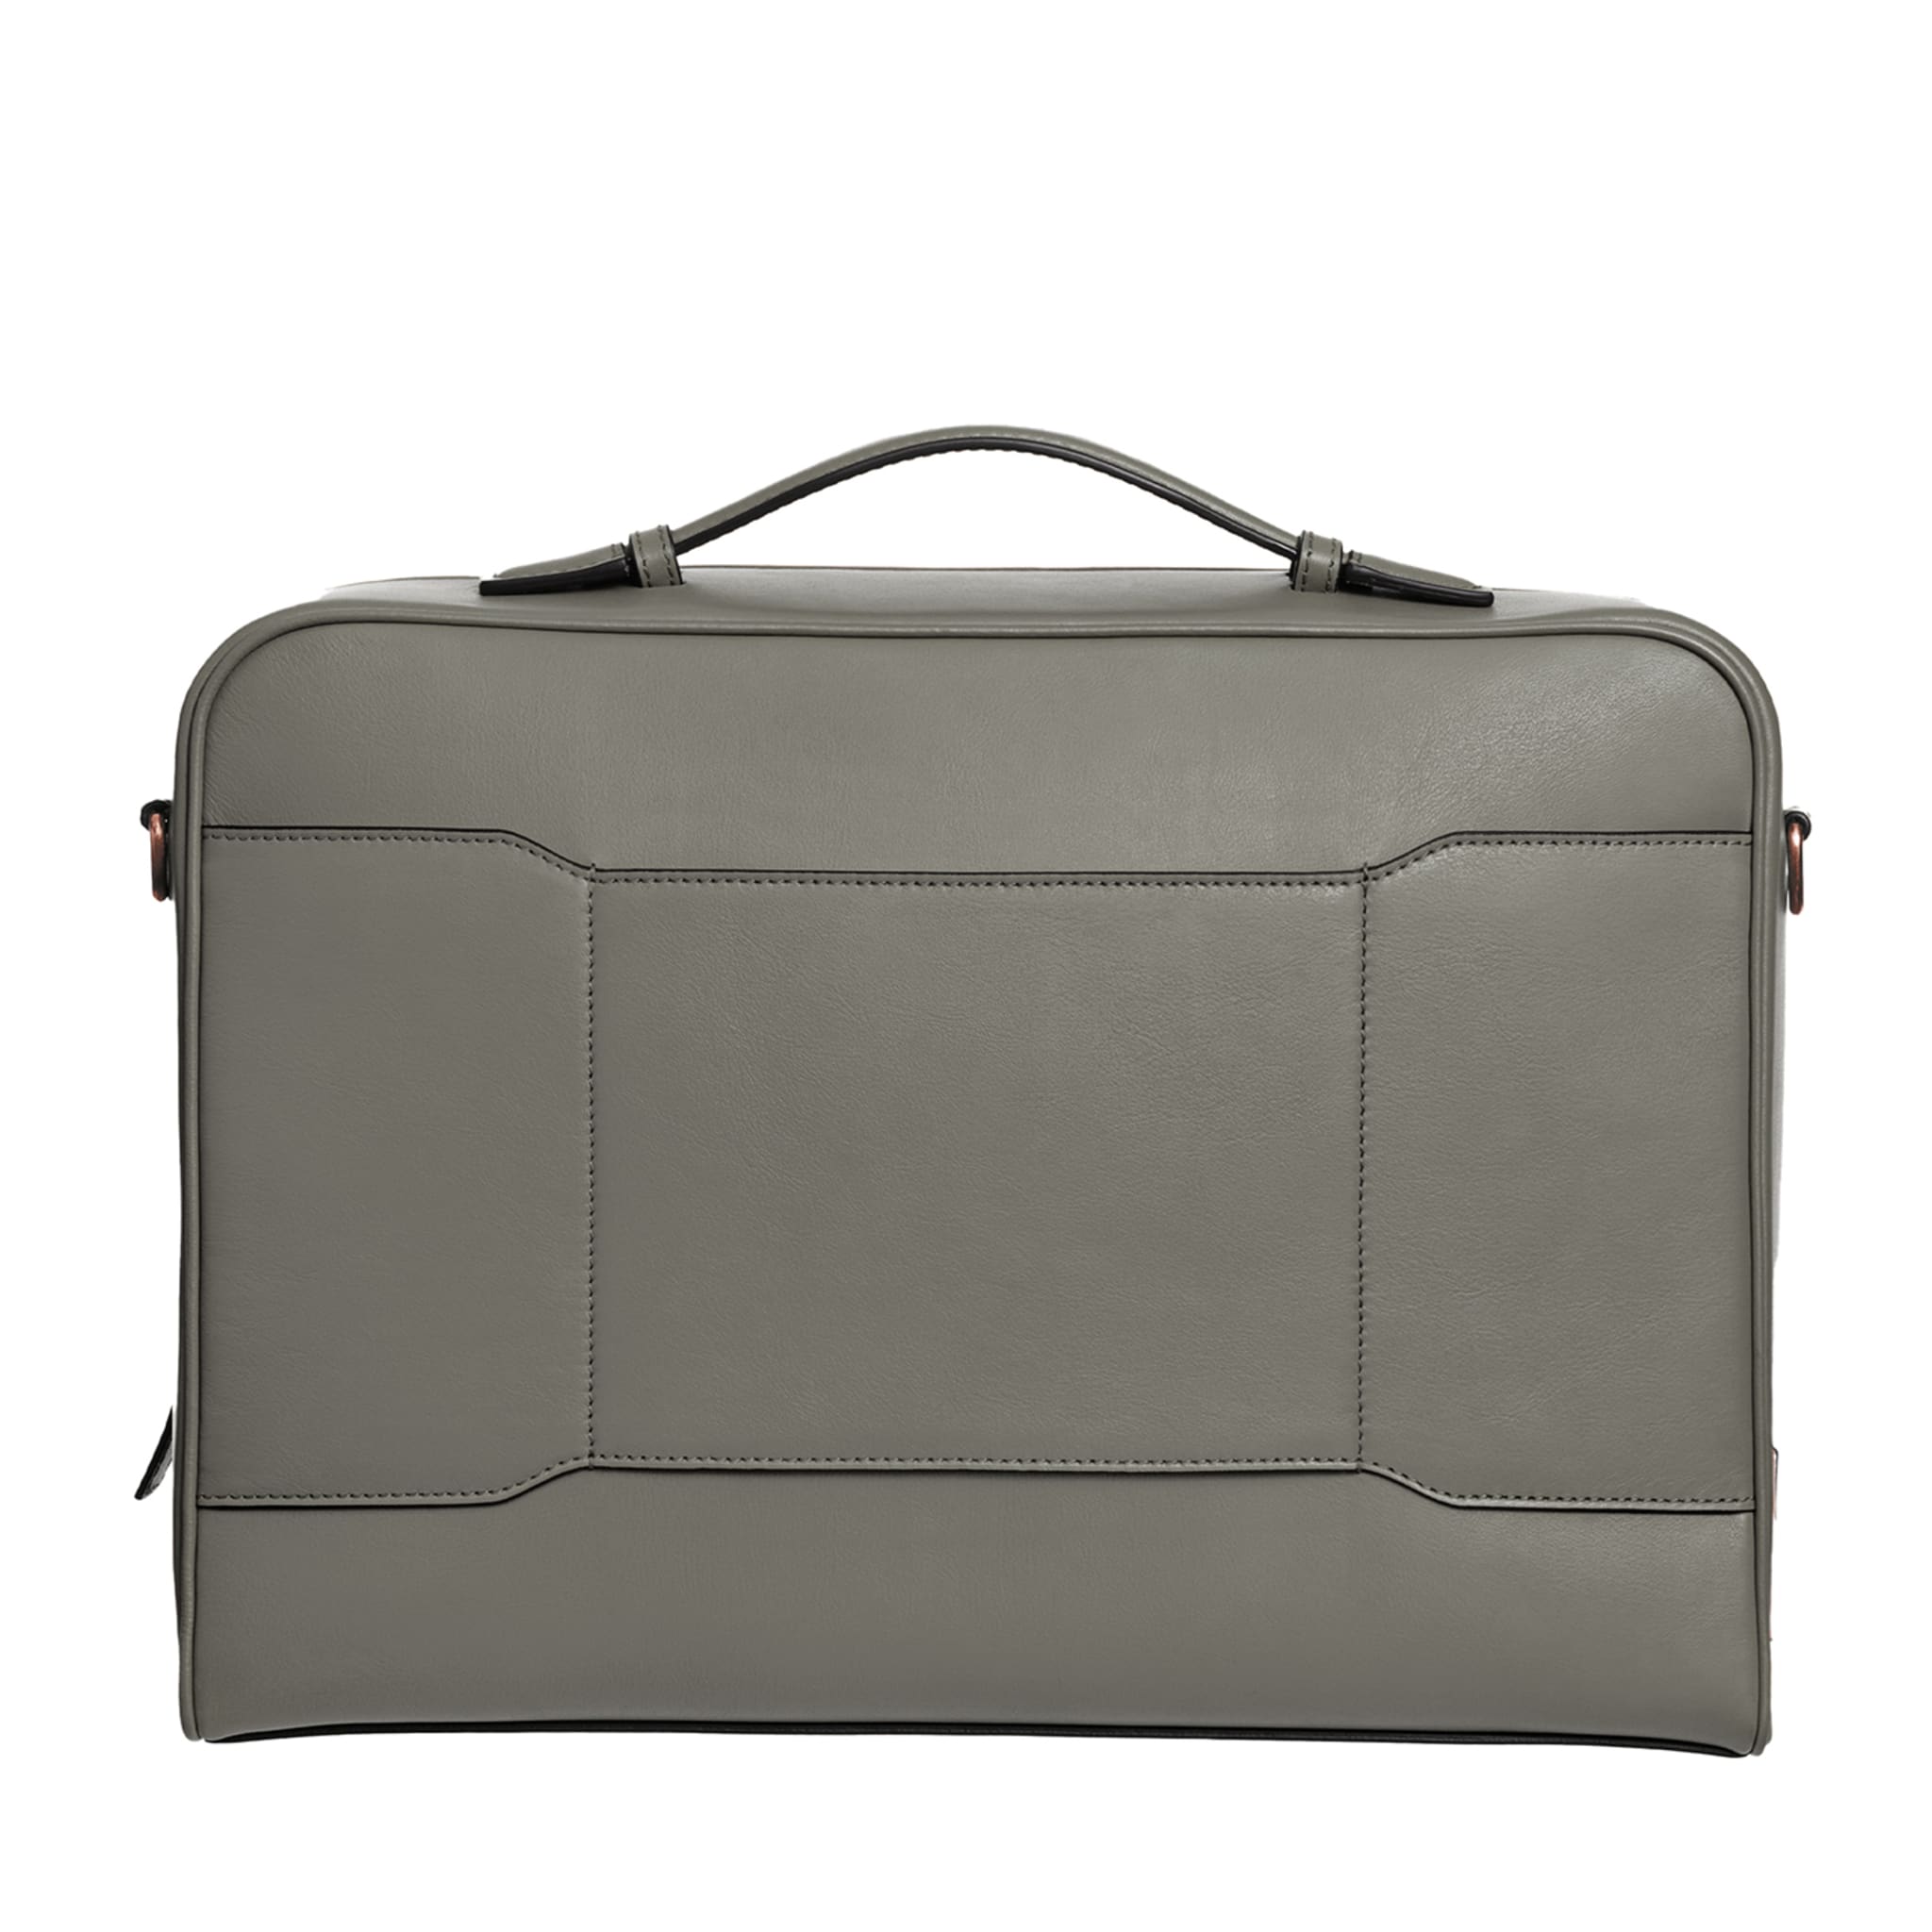 Gray Cristallo Laptop Bag - Main view